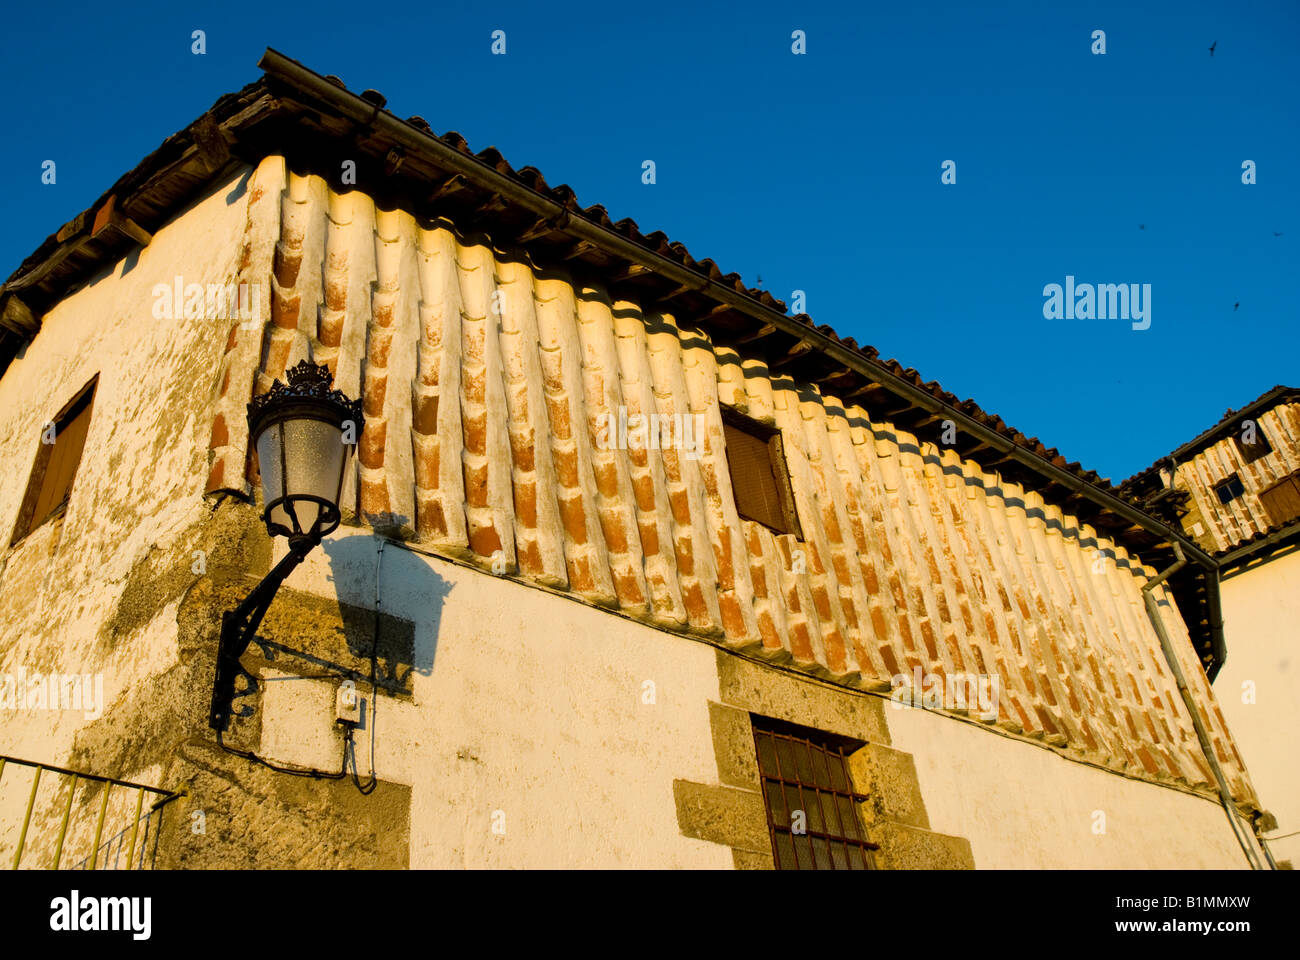 Fachada de azulejos tradicionales en CANDELARIO Salamanca provincia Castilla y León España región Foto de stock